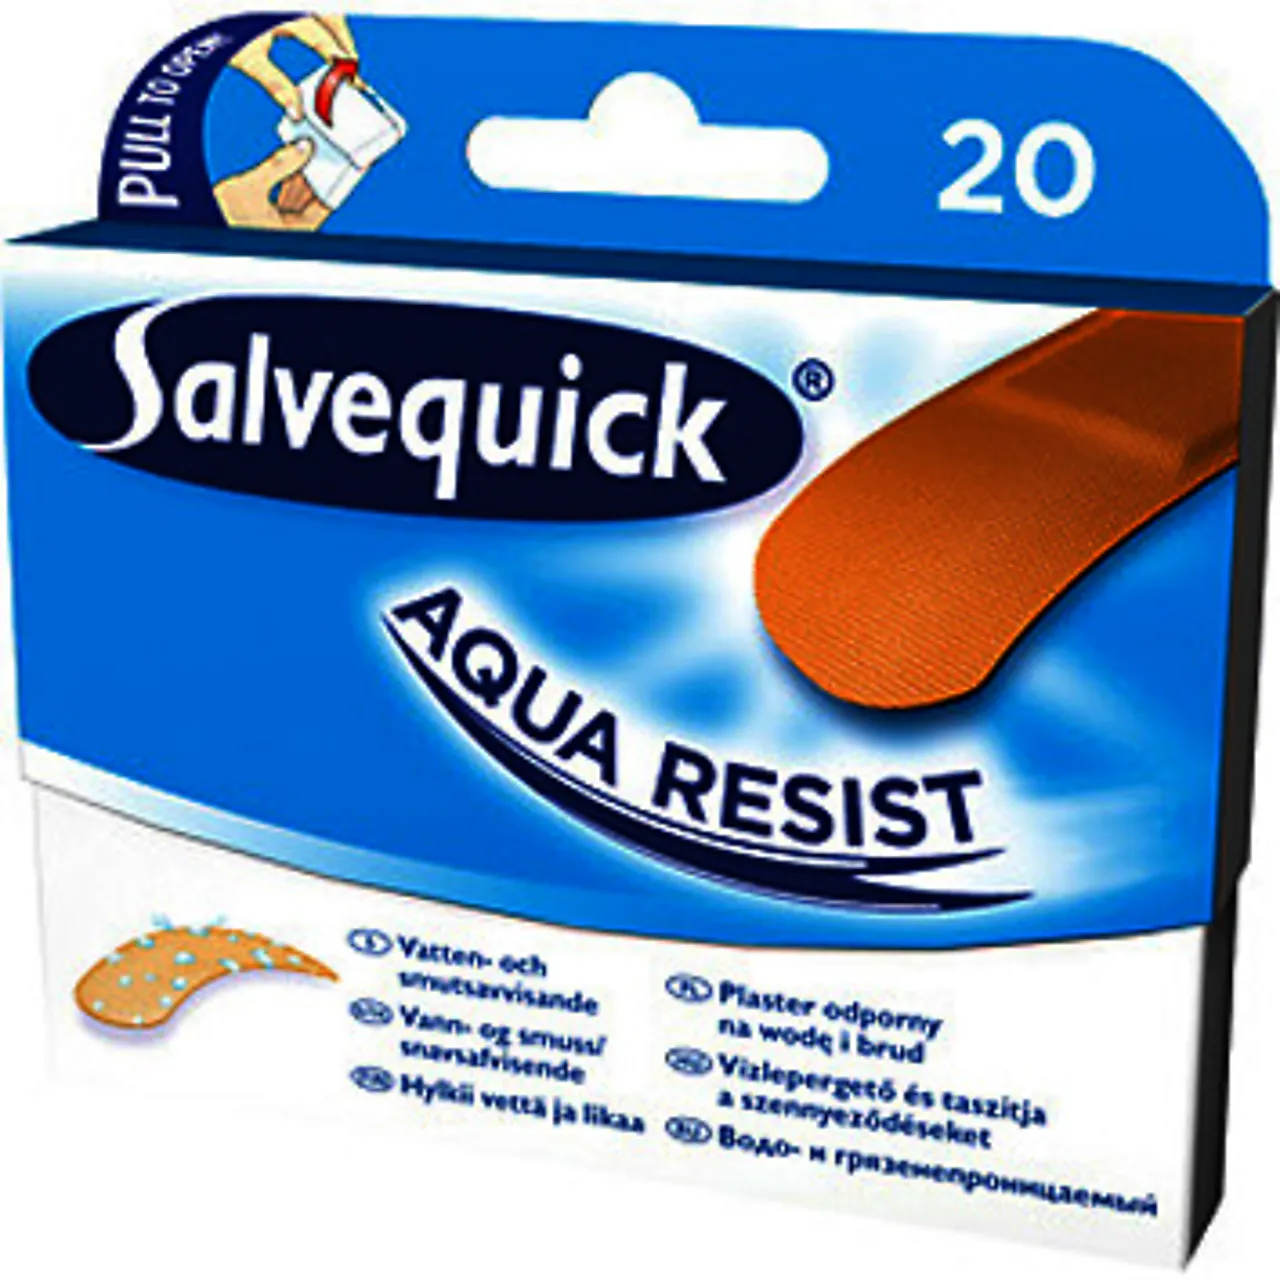 Plaster aqua resist medium salvequick